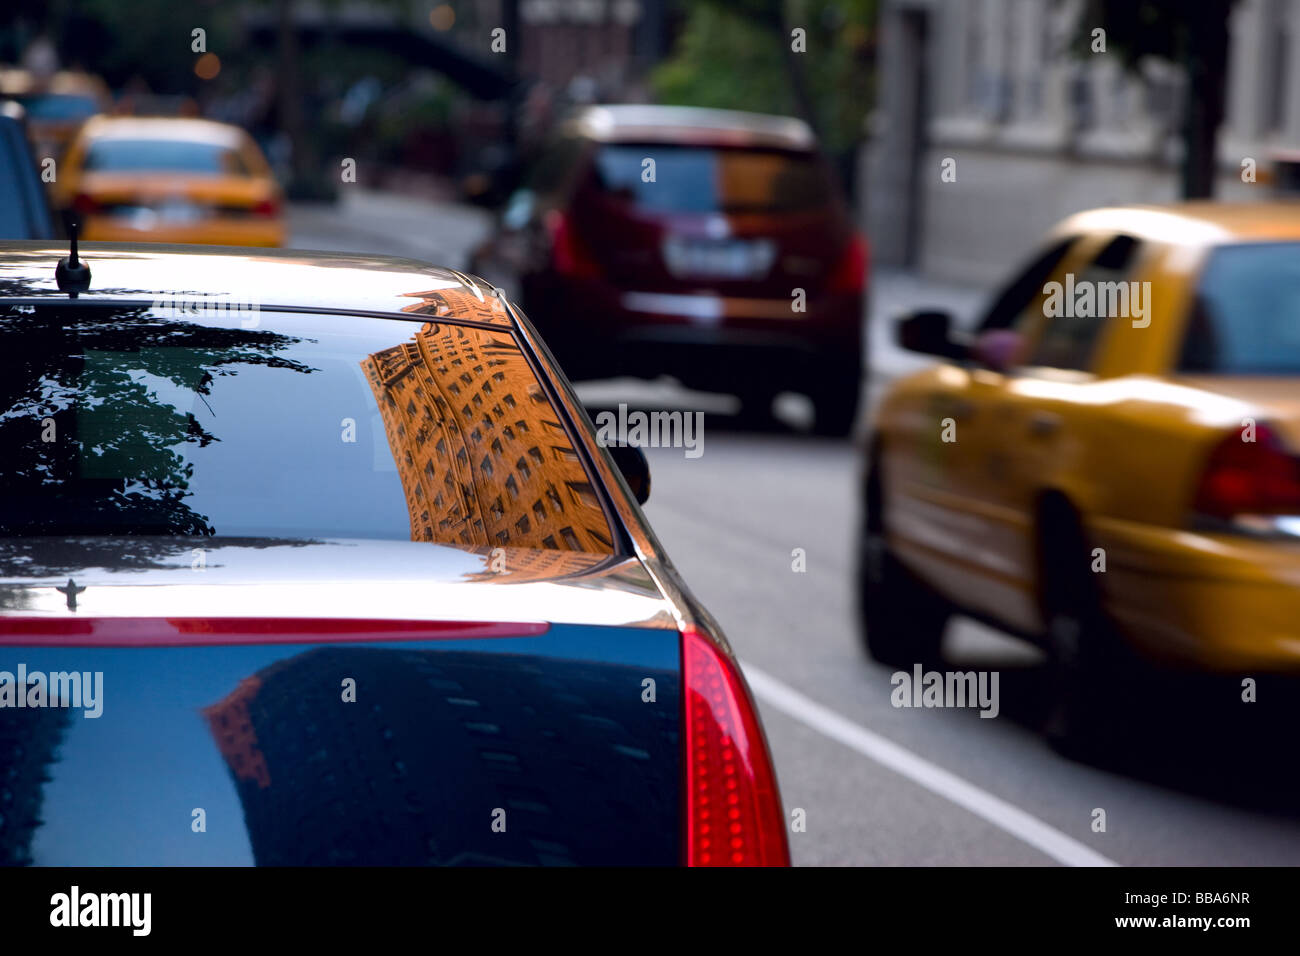 Edificio riflessa nella finestra posteriore di una Cadillac parcheggiata, New York New York, Stati Uniti d'America, America del Nord. Foto Stock